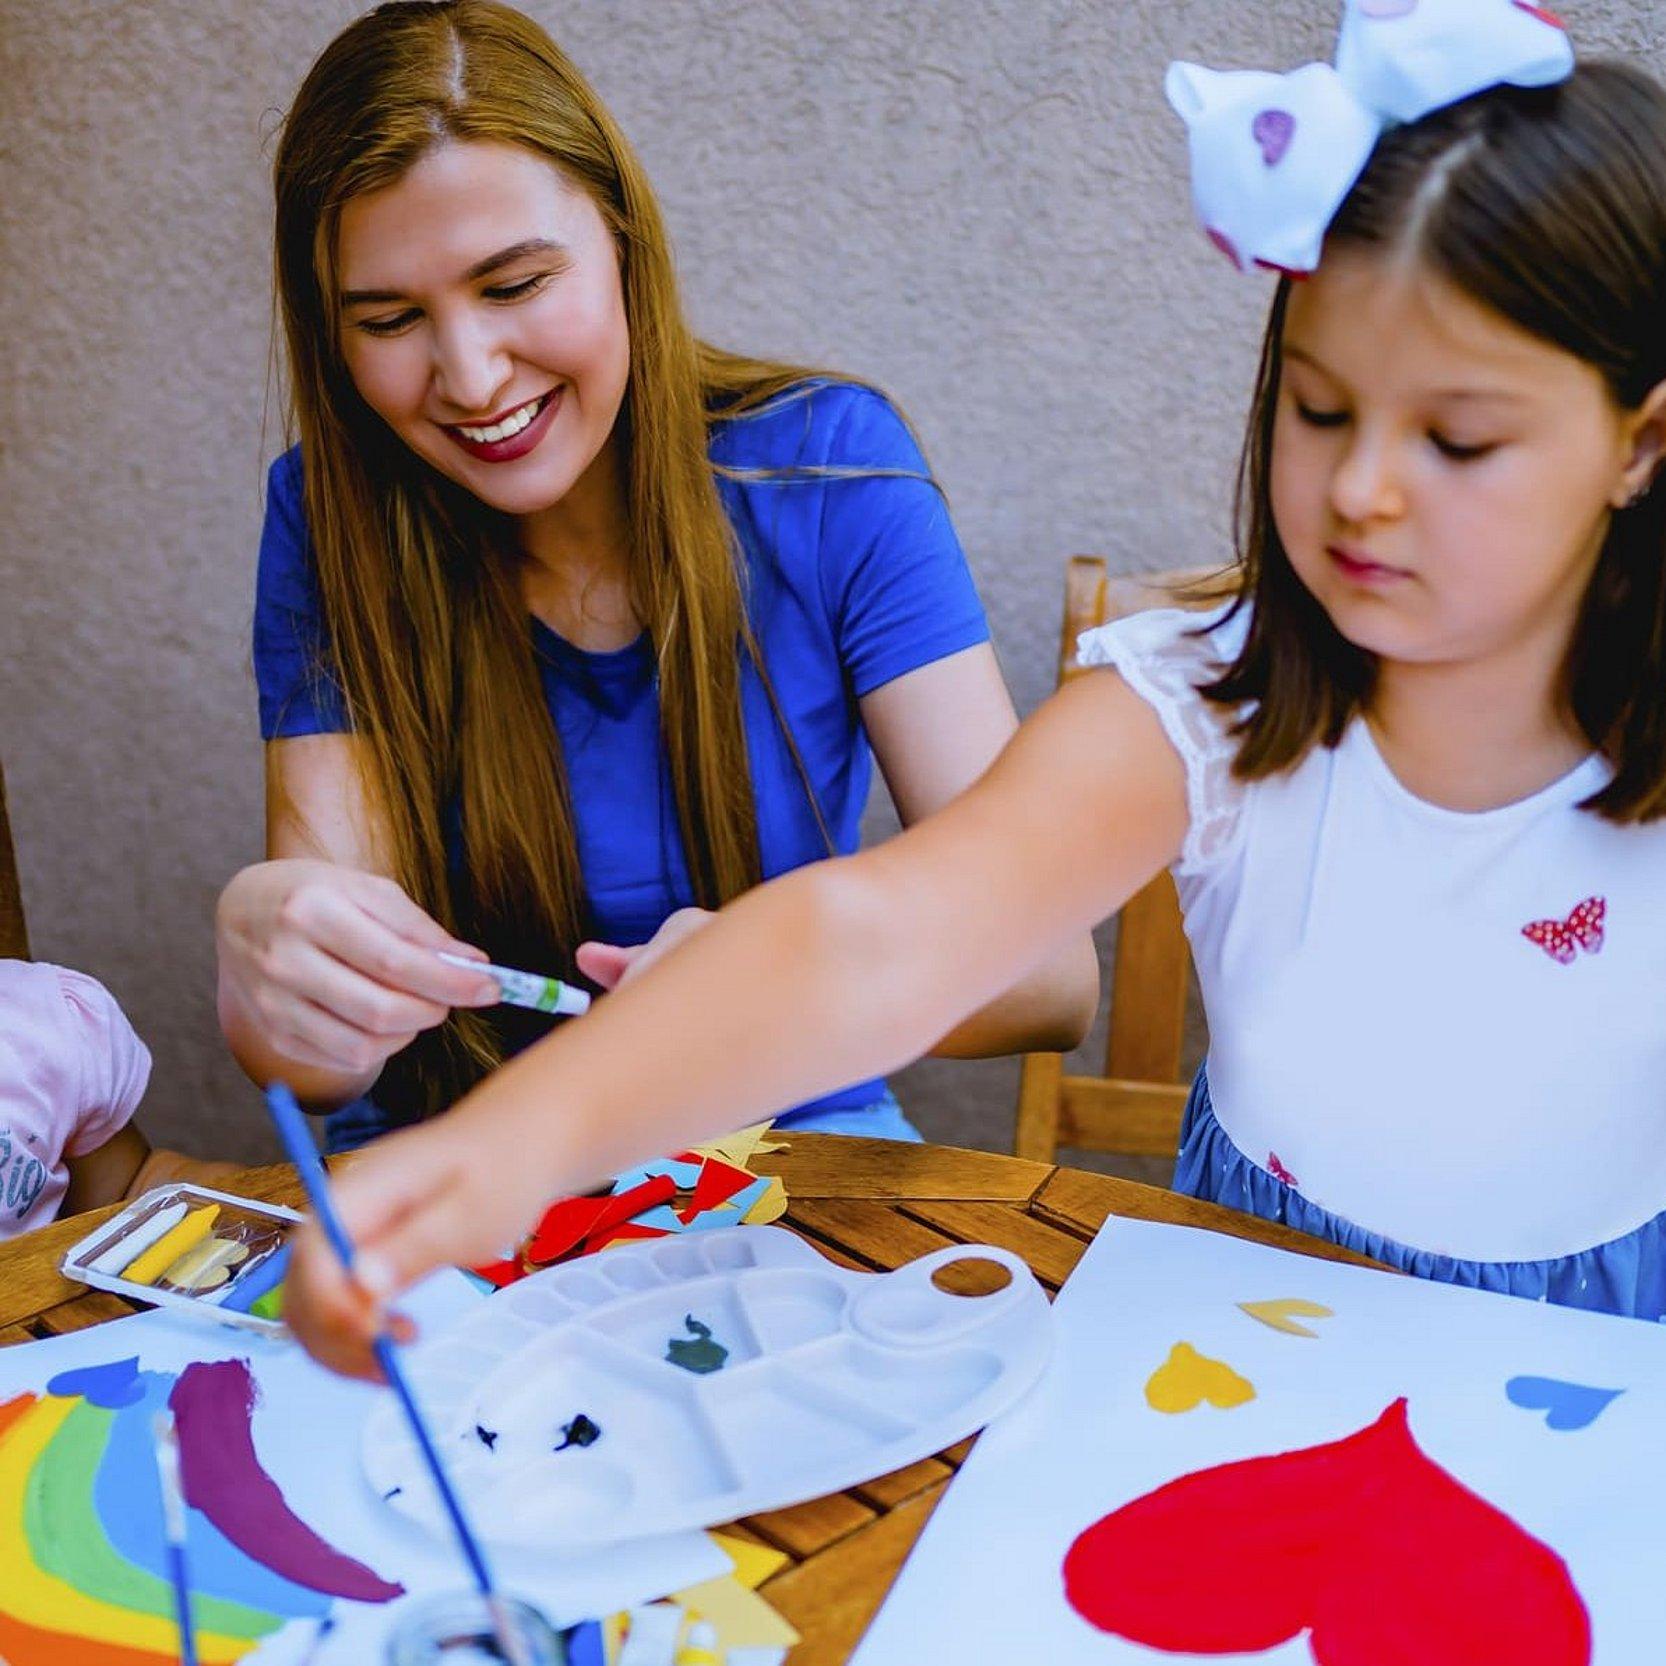 Eine Mutter sitzt in der Mitte am Tisch, rechts und links jeweils ein Mädchen, ihre Töchter, die Bilder mit Wasserfarbe malen. Auf einem Bild ist ein rotes Herz zu sehen, auf dem anderen Bild ein Regenbogen in vielen Farbein, alle sehen glücklich aus.